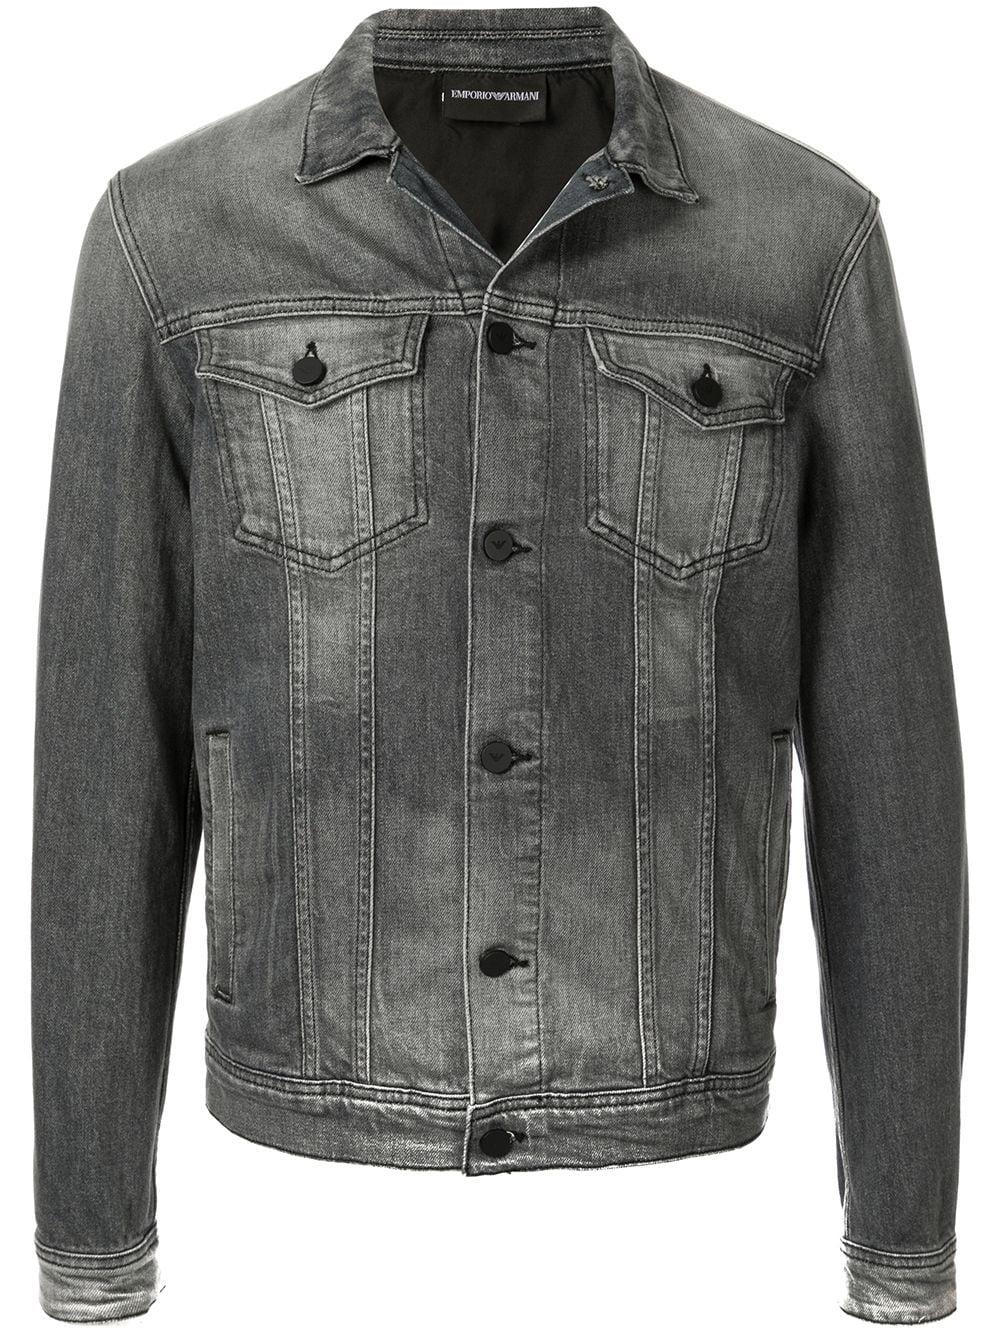 Buy > armani denim jacket men's > in stock